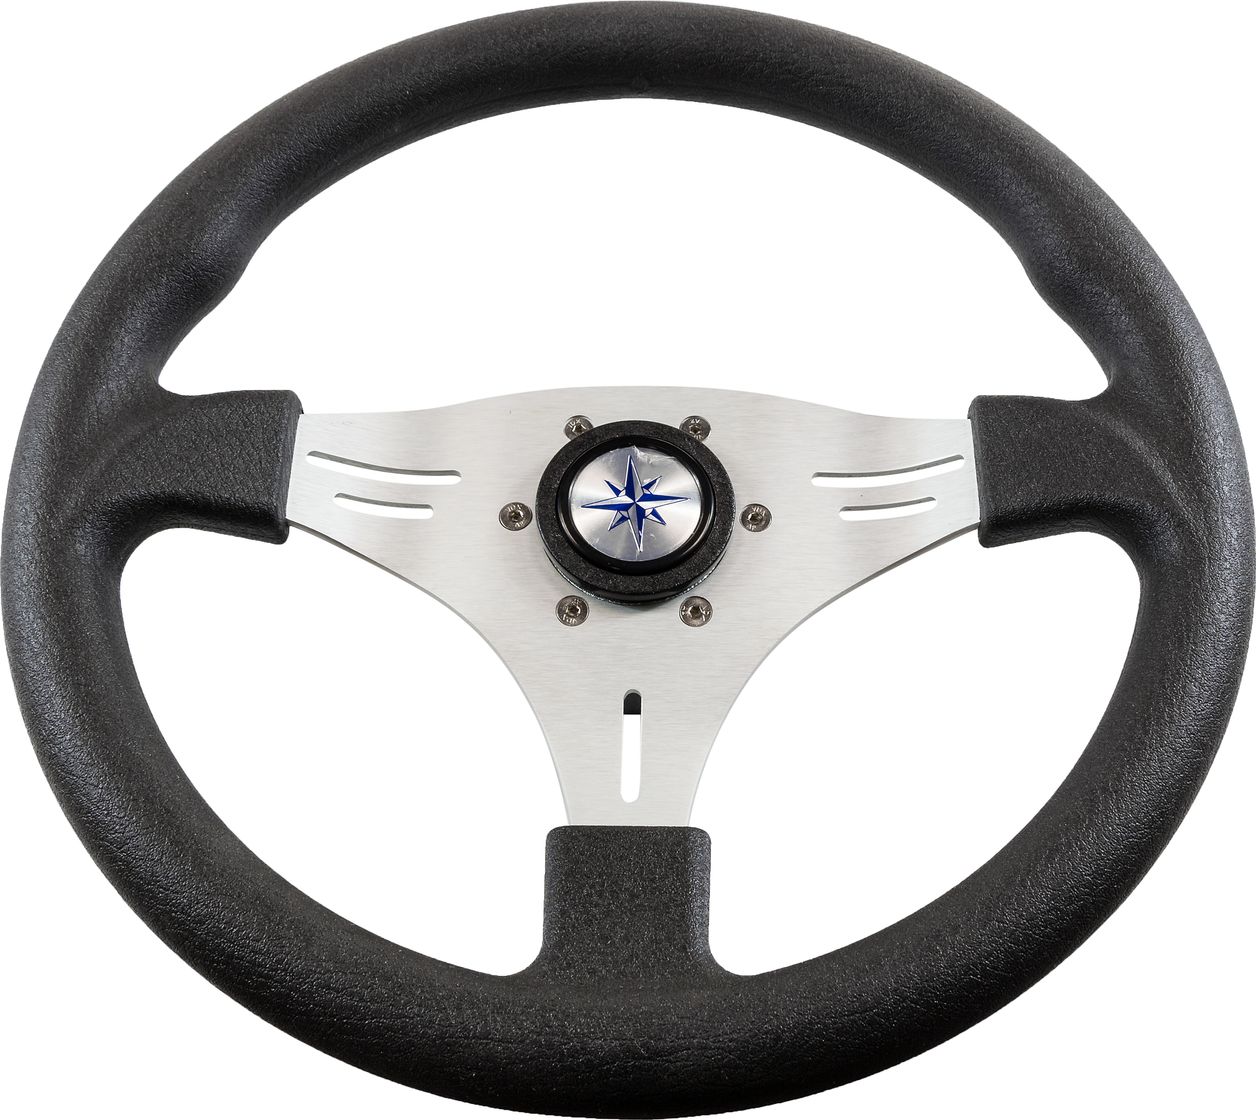 Рулевое колесо MANTA обод черный, спицы серебряные д. 355 мм VN70551-01 рулевое колесо orion обод черный спицы серебряные д 355 мм vn960101 01